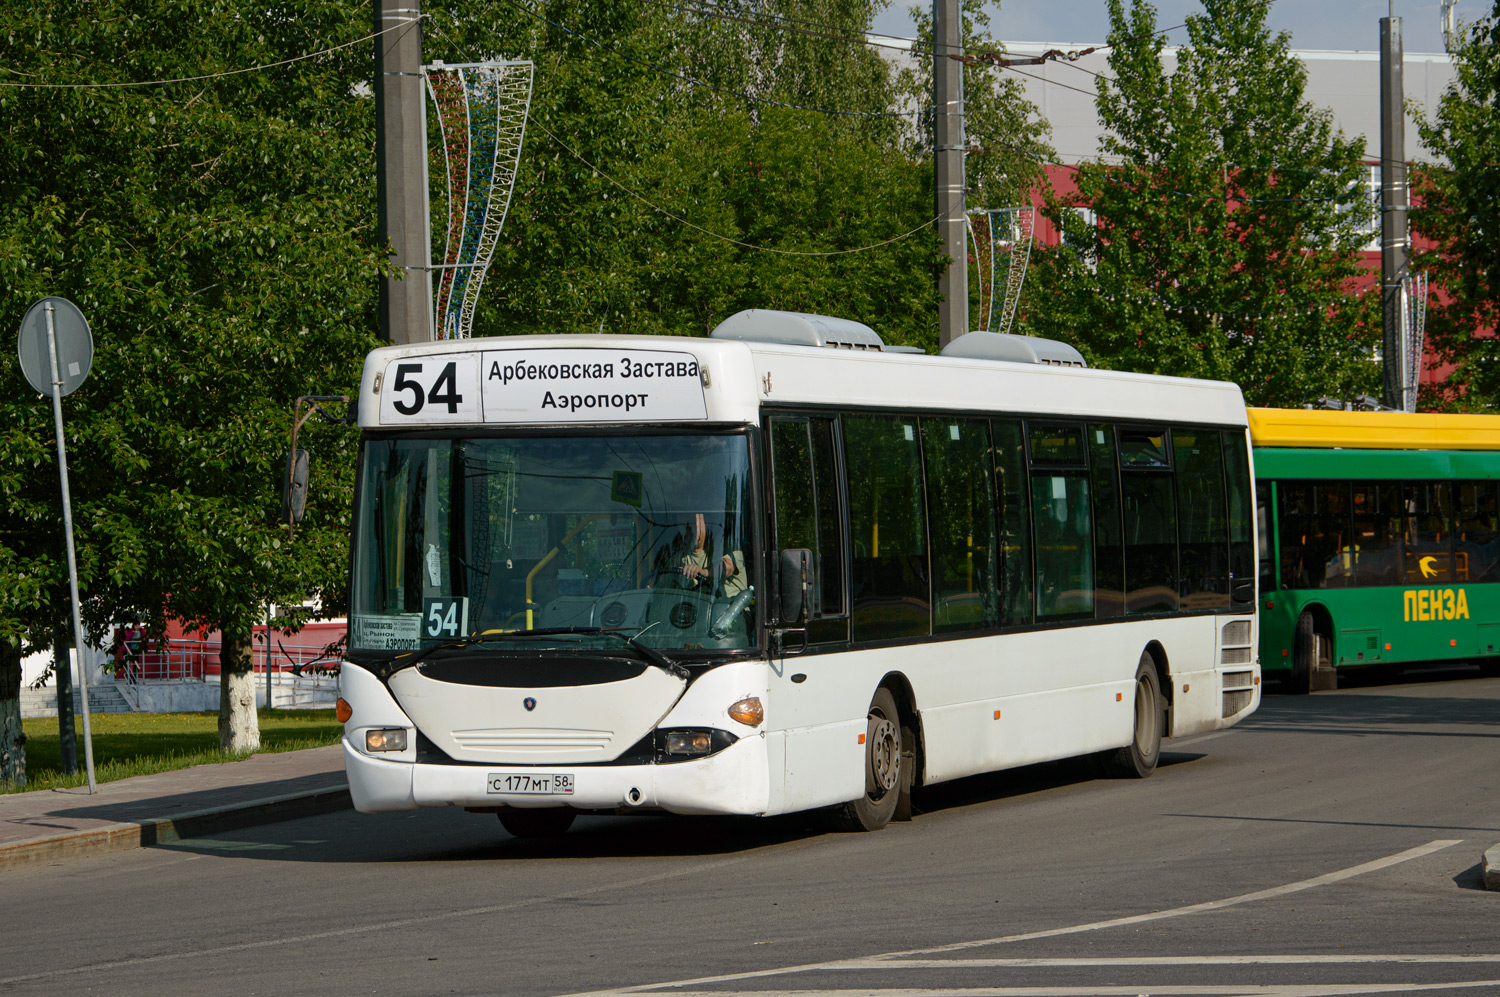 Obwód penzeński, Scania OmniLink I (Scania-St.Petersburg) Nr С 177 МТ 58